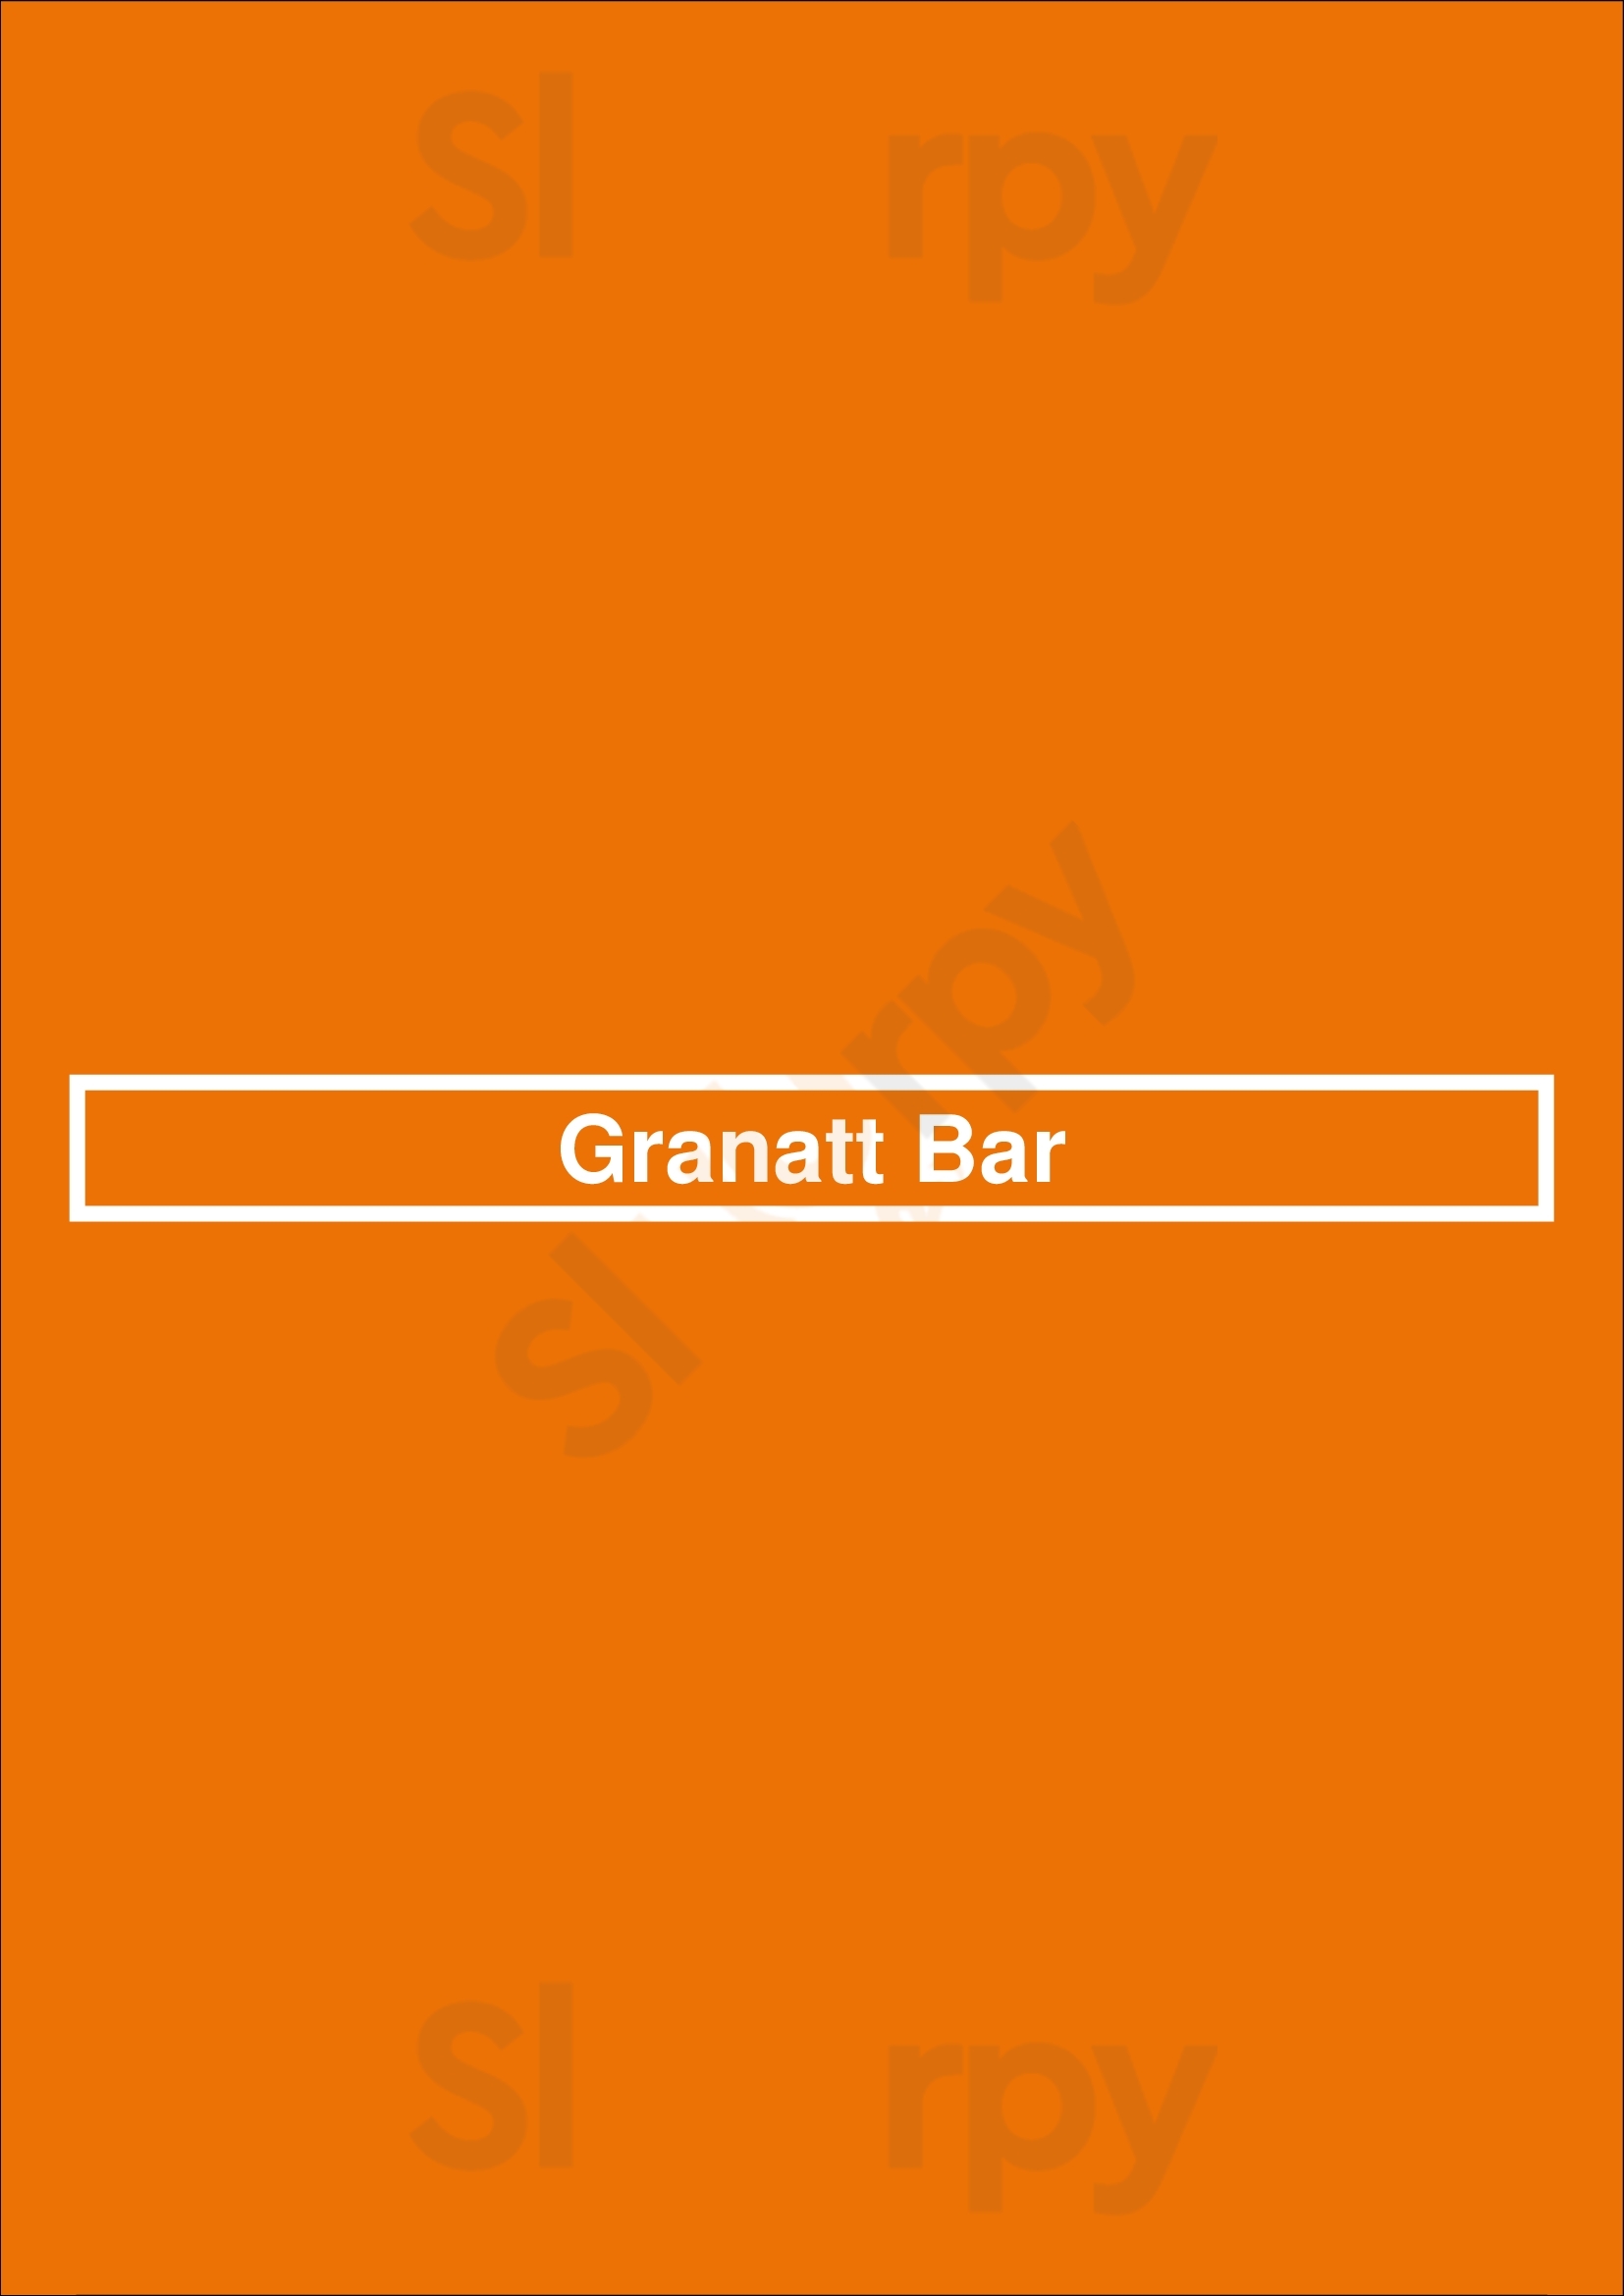 Granatt Wine Bar Barcelona Menu - 1